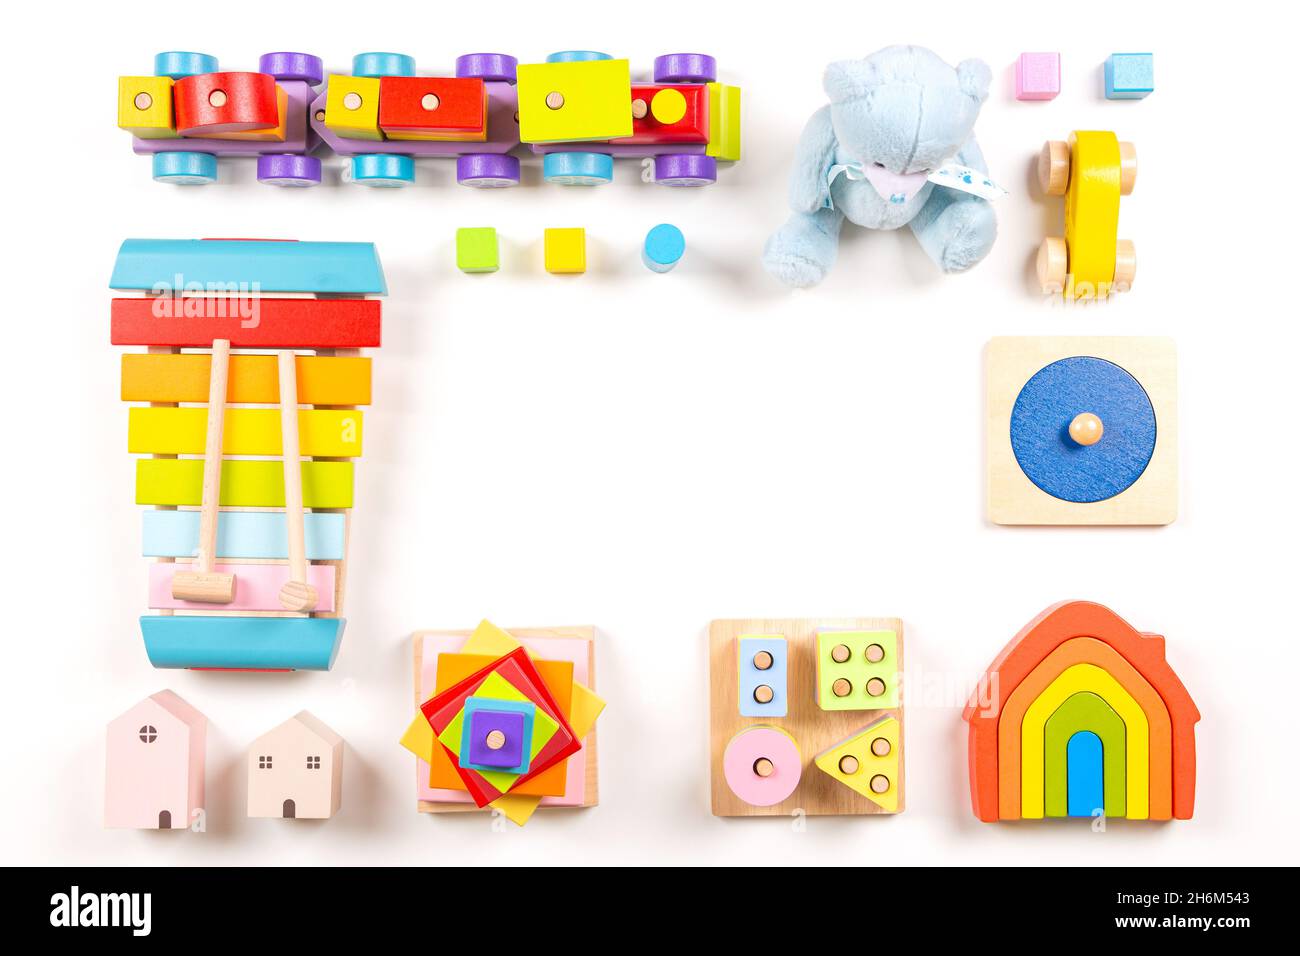 Marco de juguetes para niños pequeños. Coloridos juguetes educativos y de madera Montessori para niños dispuestos sobre fondo blanco. Vista superior, diseño plano Foto de stock